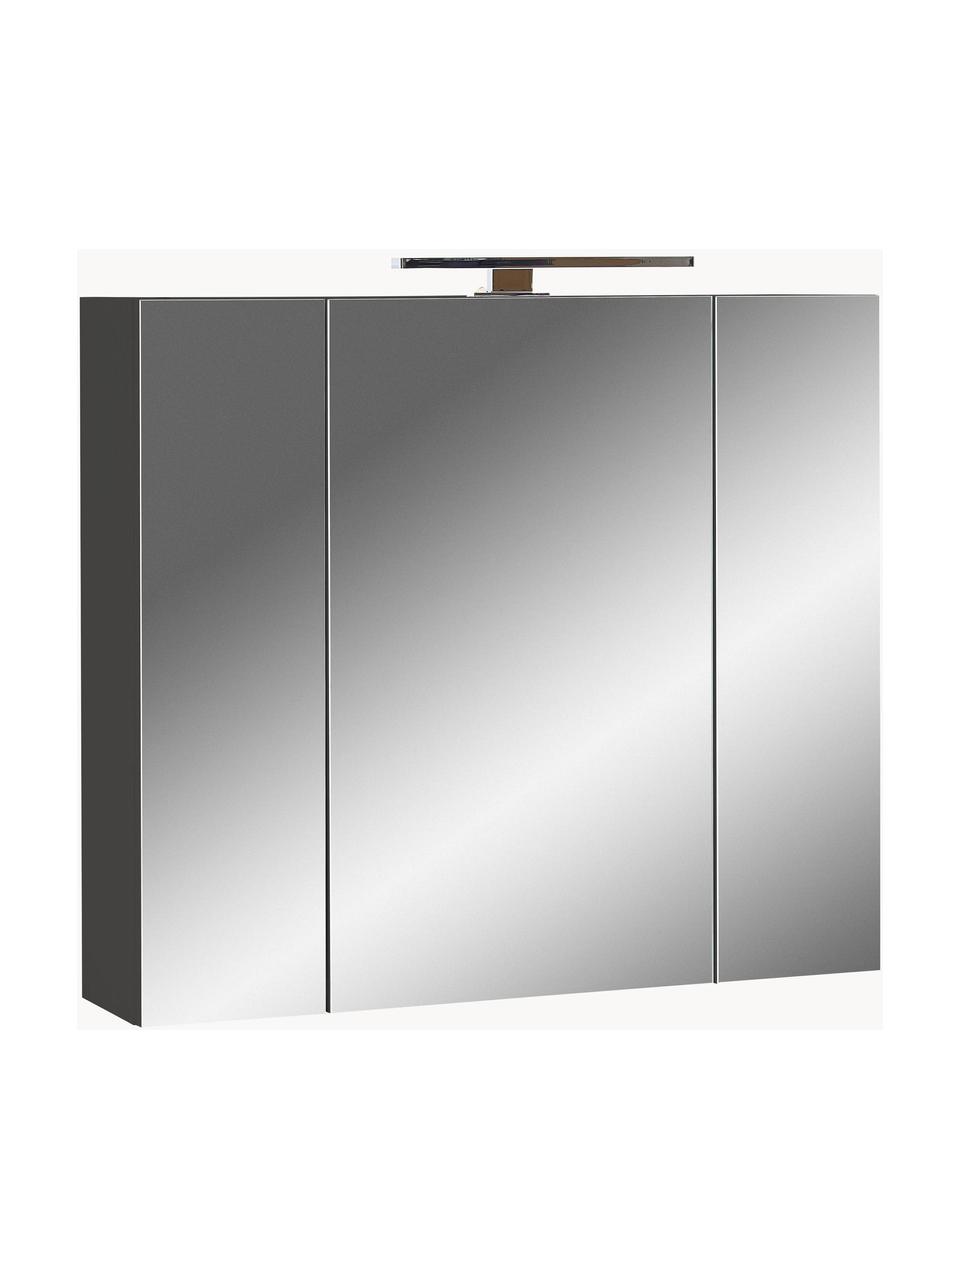 Armoire à portes miroir avec éclairage LED Elisa, Anthracite, argenté, larg. 76 x haut. 71 cm